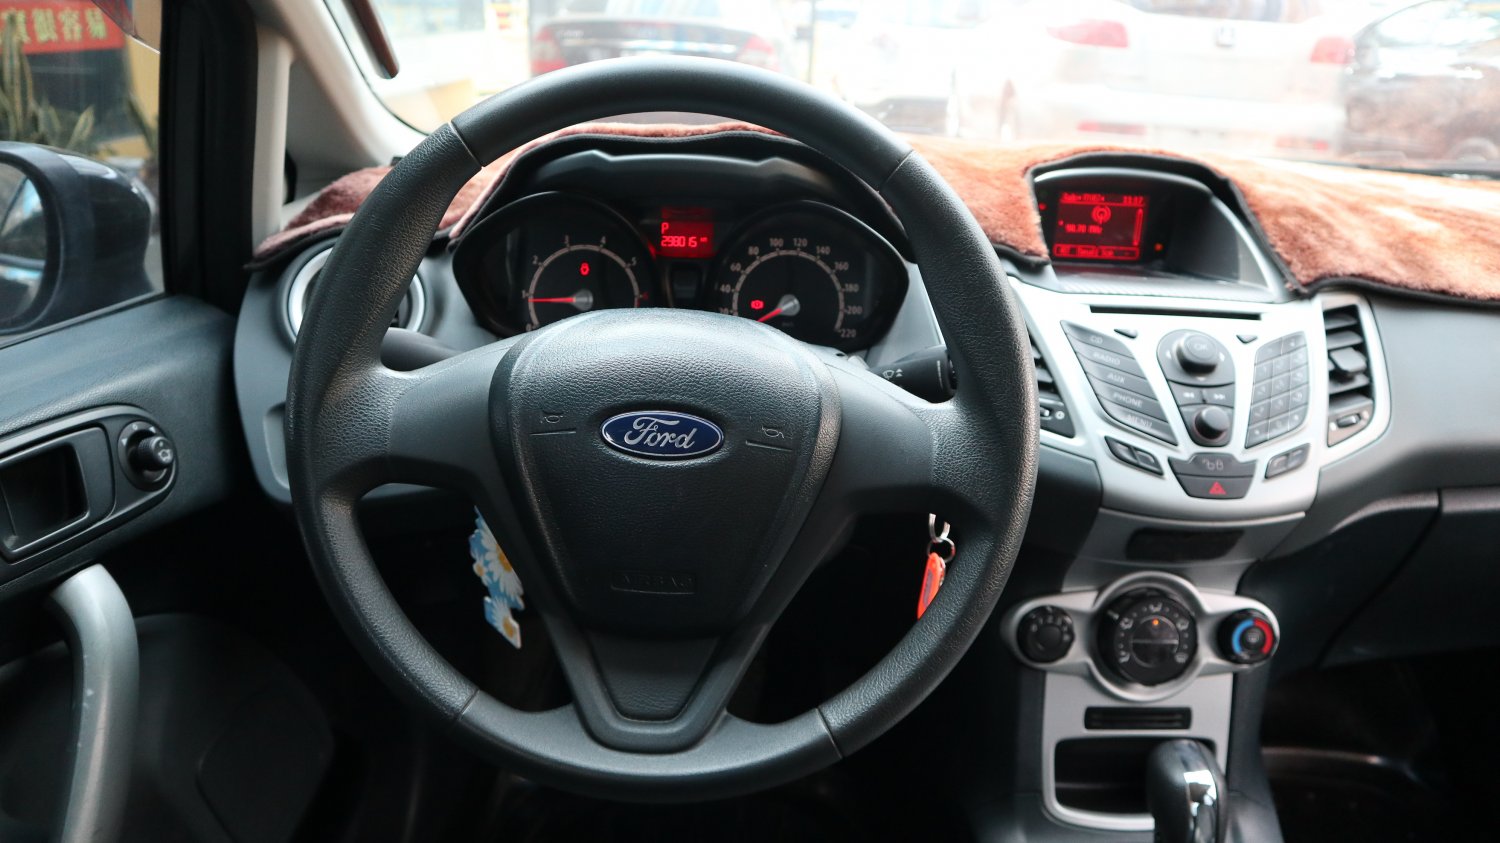 Ford 福特 ／ Fiesta ／ 2012年 ／ 2012年Ford Fiesta 灰色 福特中古車 ／ 九州欣旺汽車 (台南)